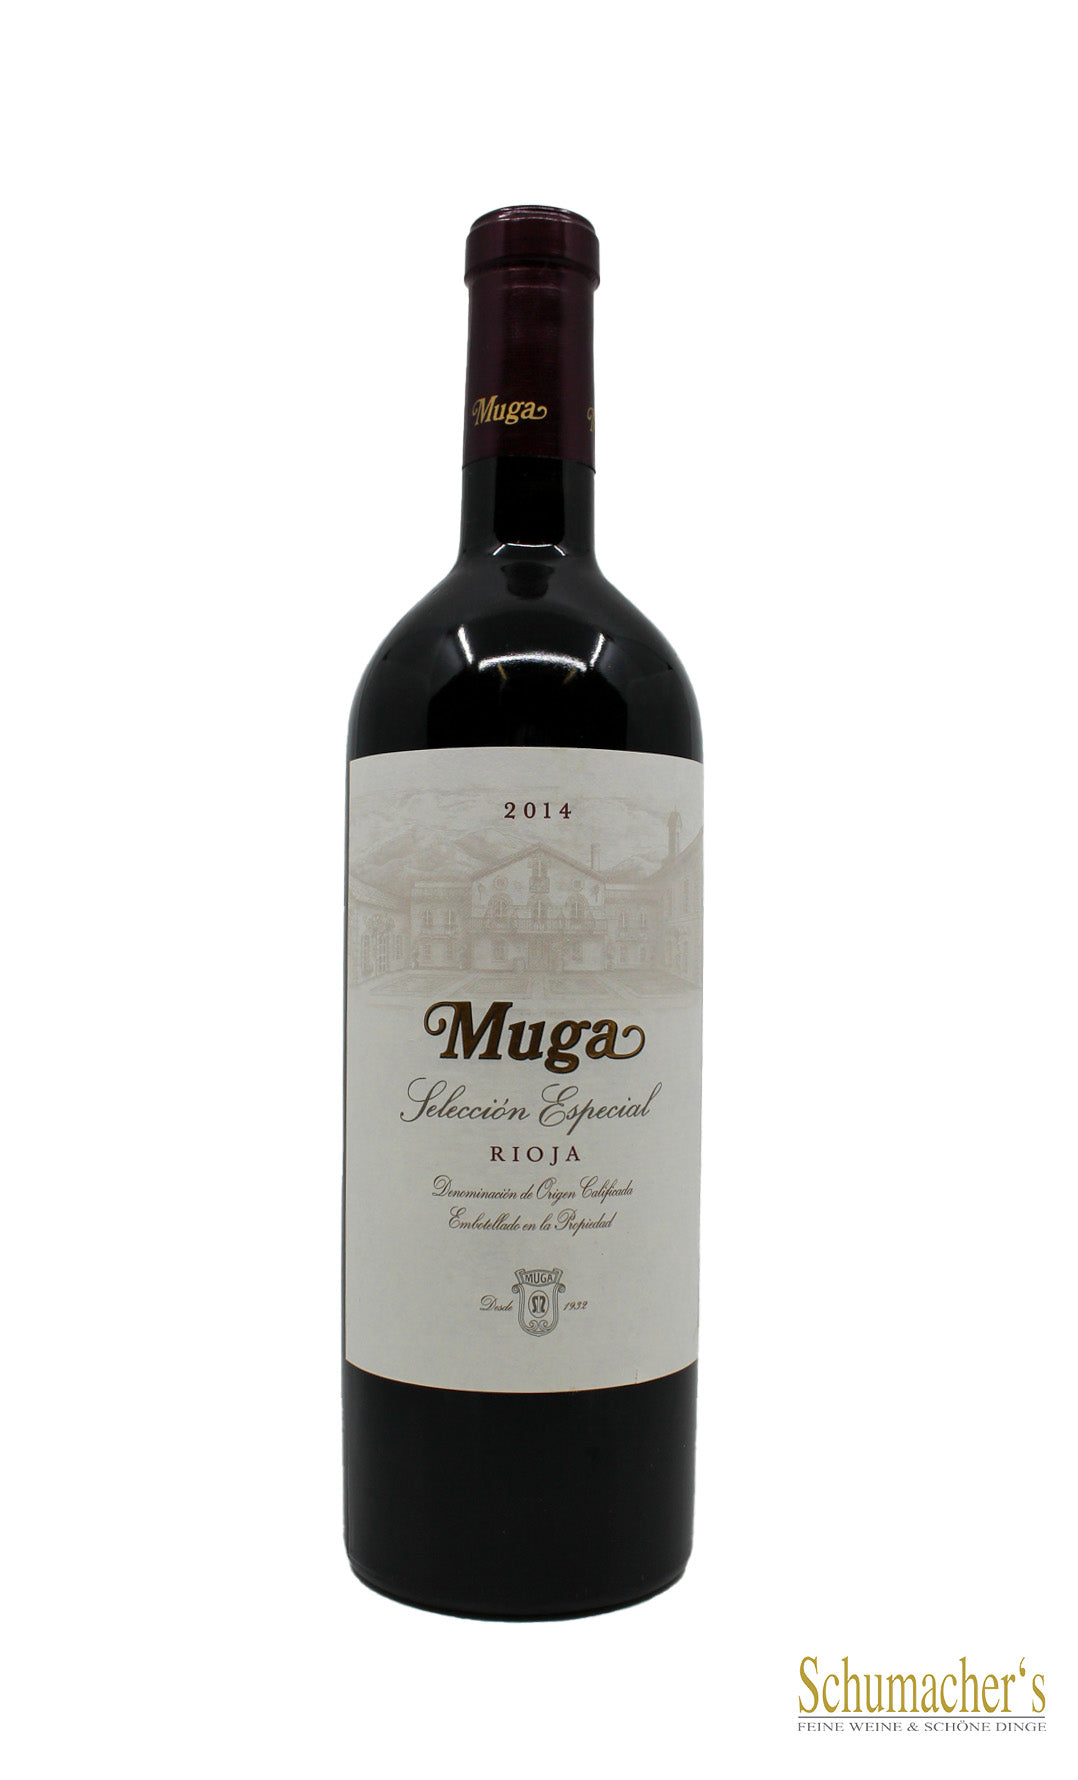 2015 Rioja Muga Selecion Especial